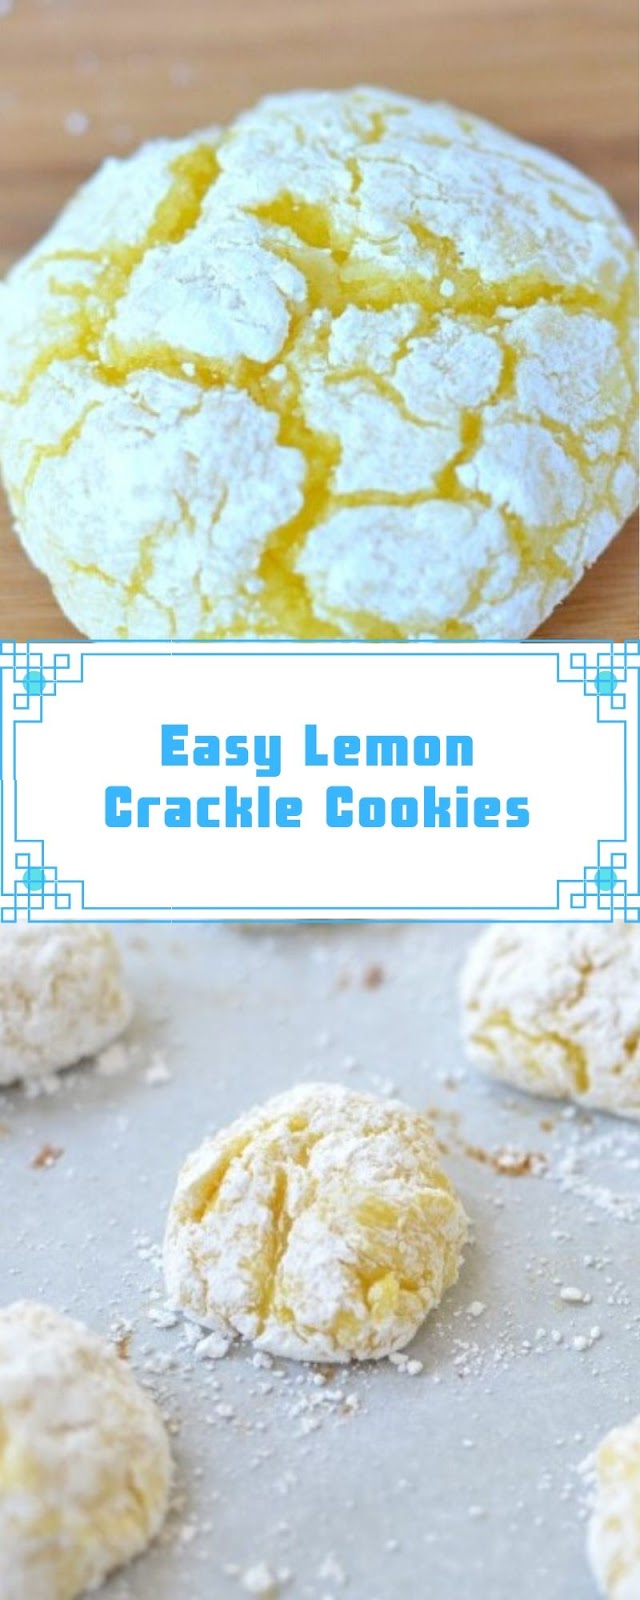 Easy Lemon Crackle Cookies